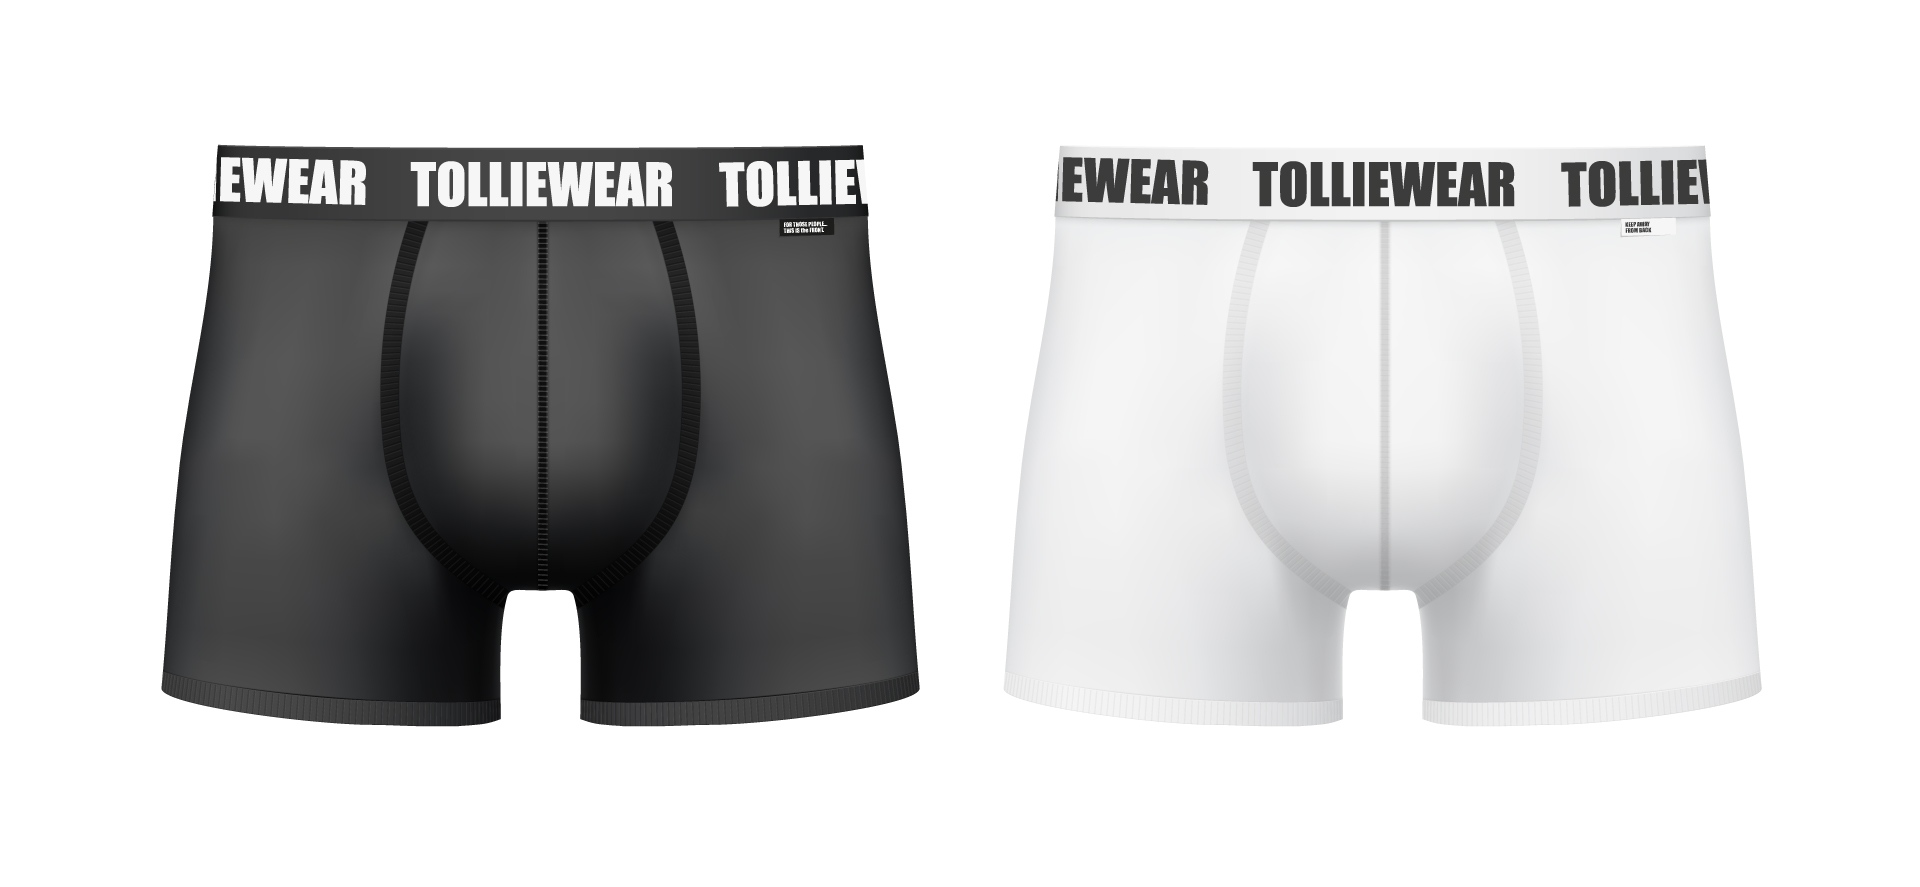 Tolliewear boxershorts brand